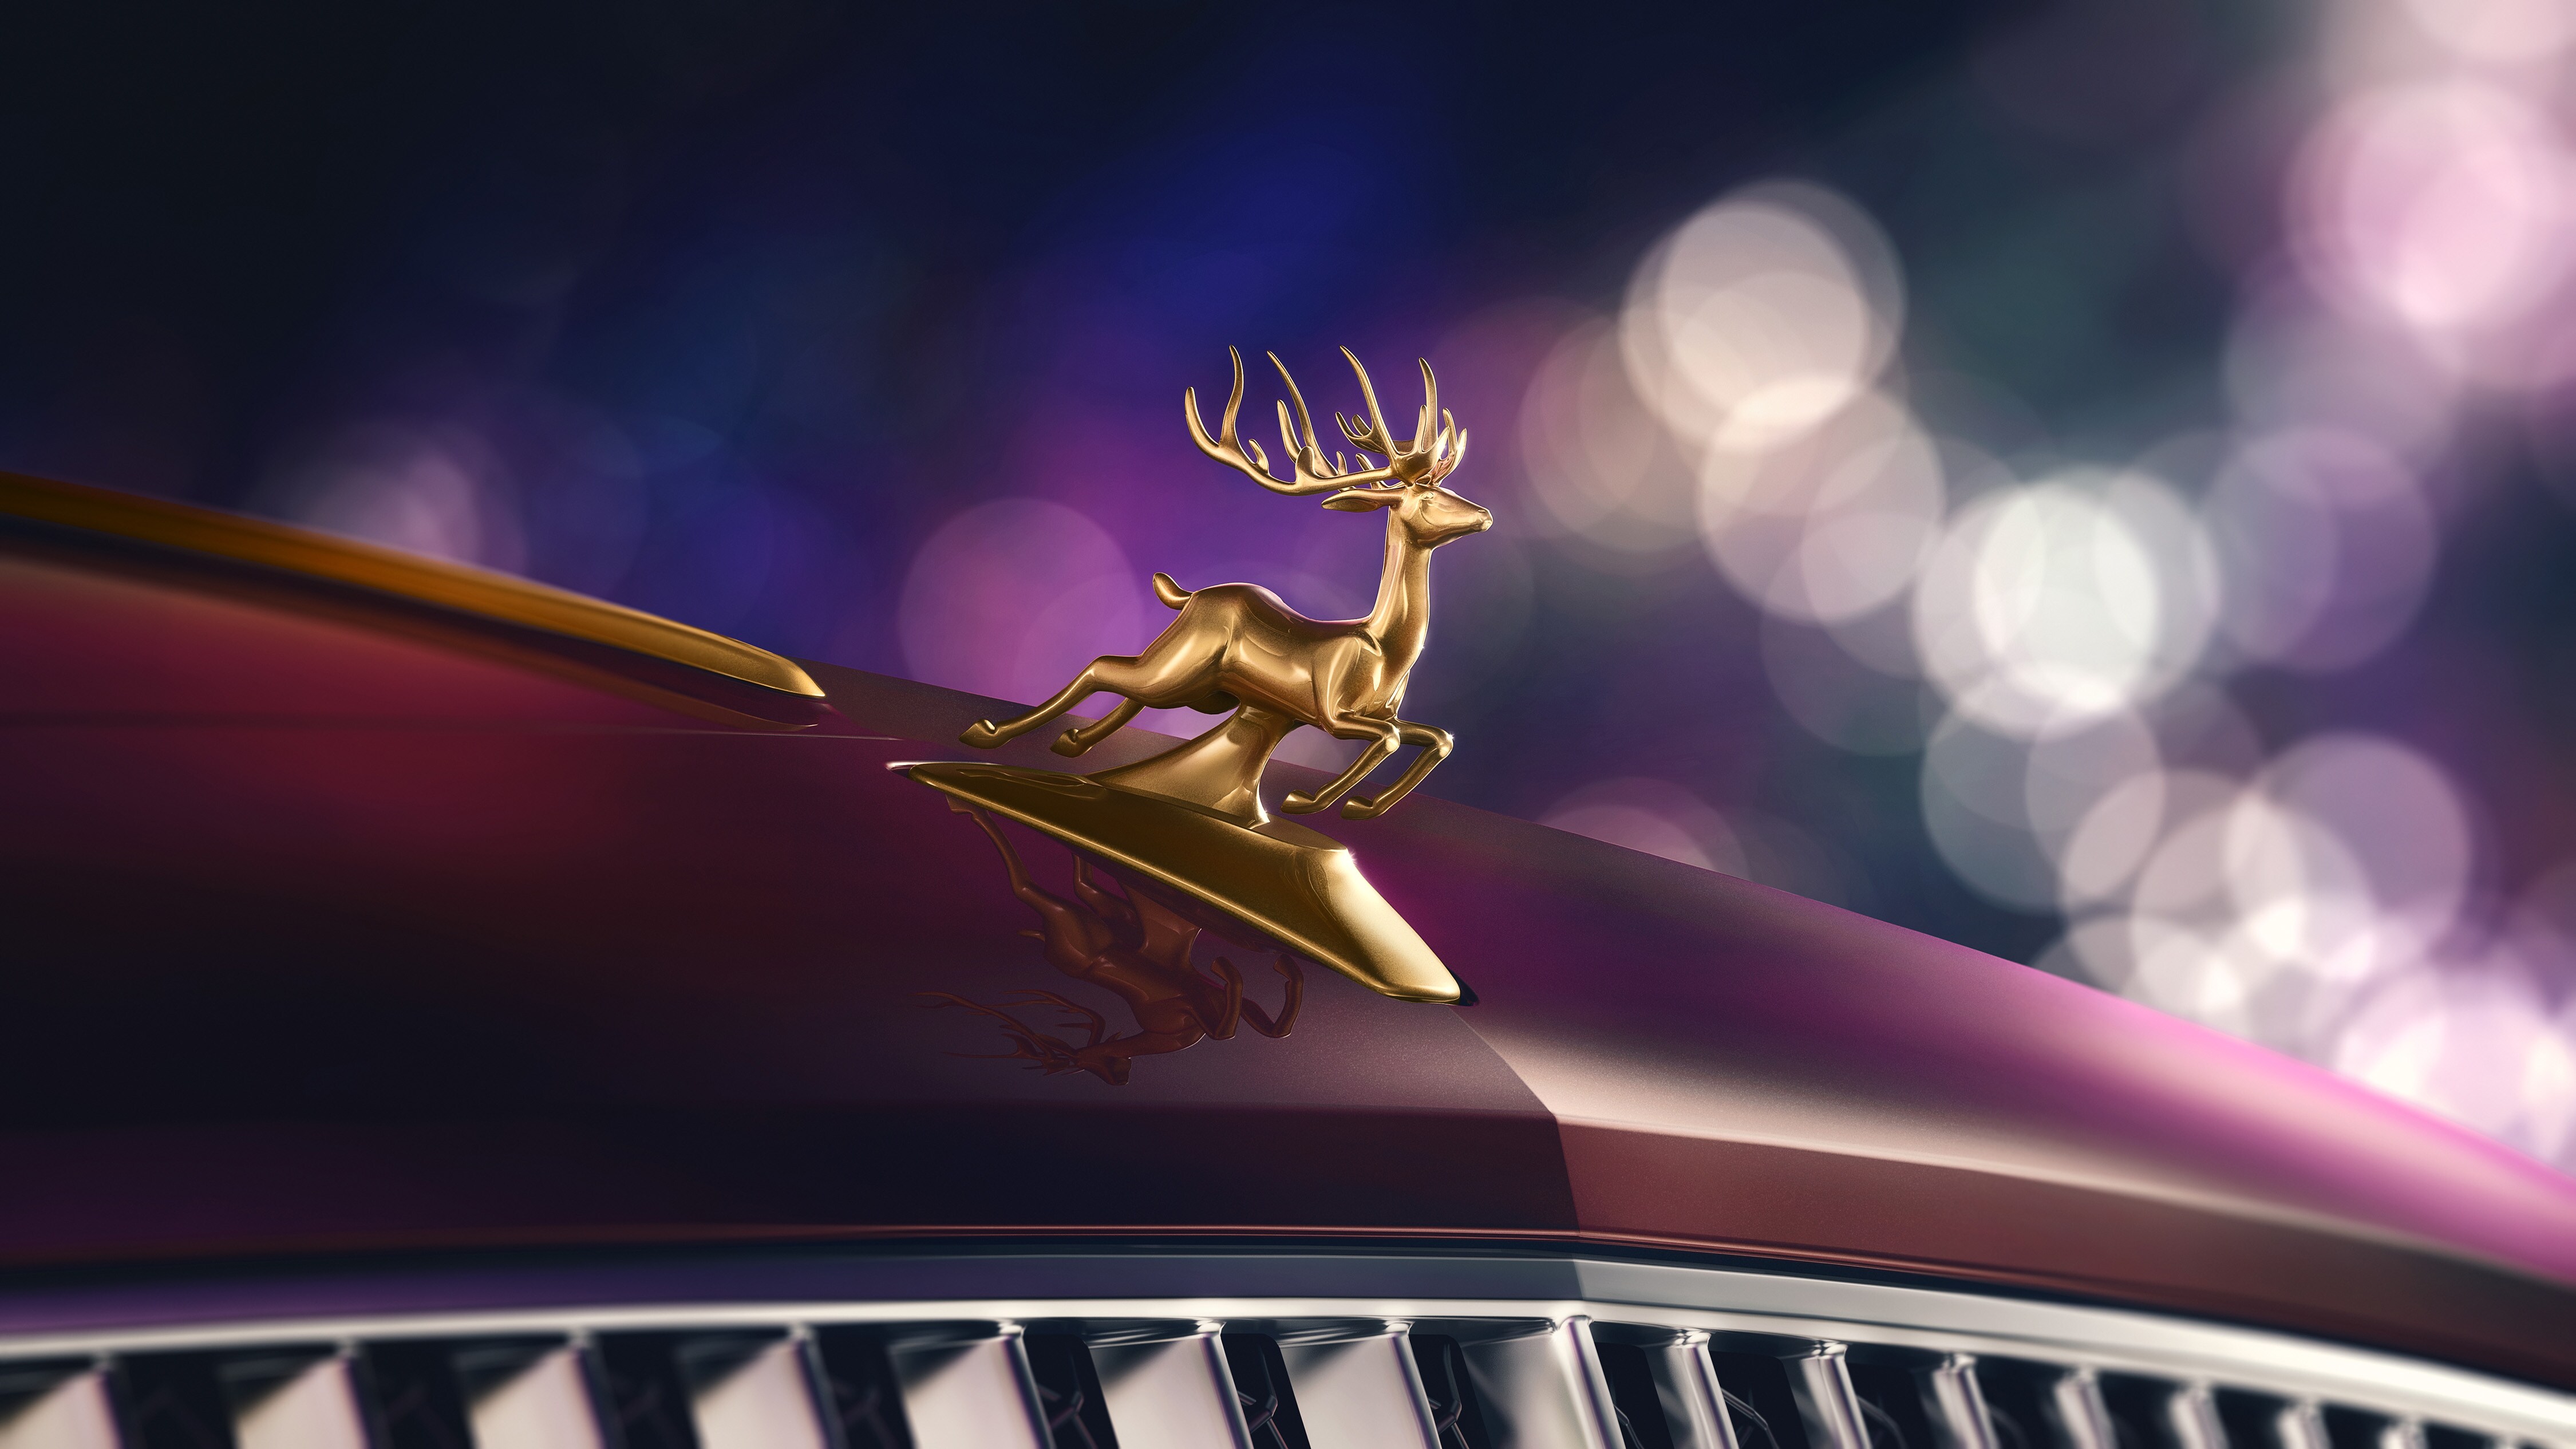 A golden reindeer hood ornament on the car bonnet